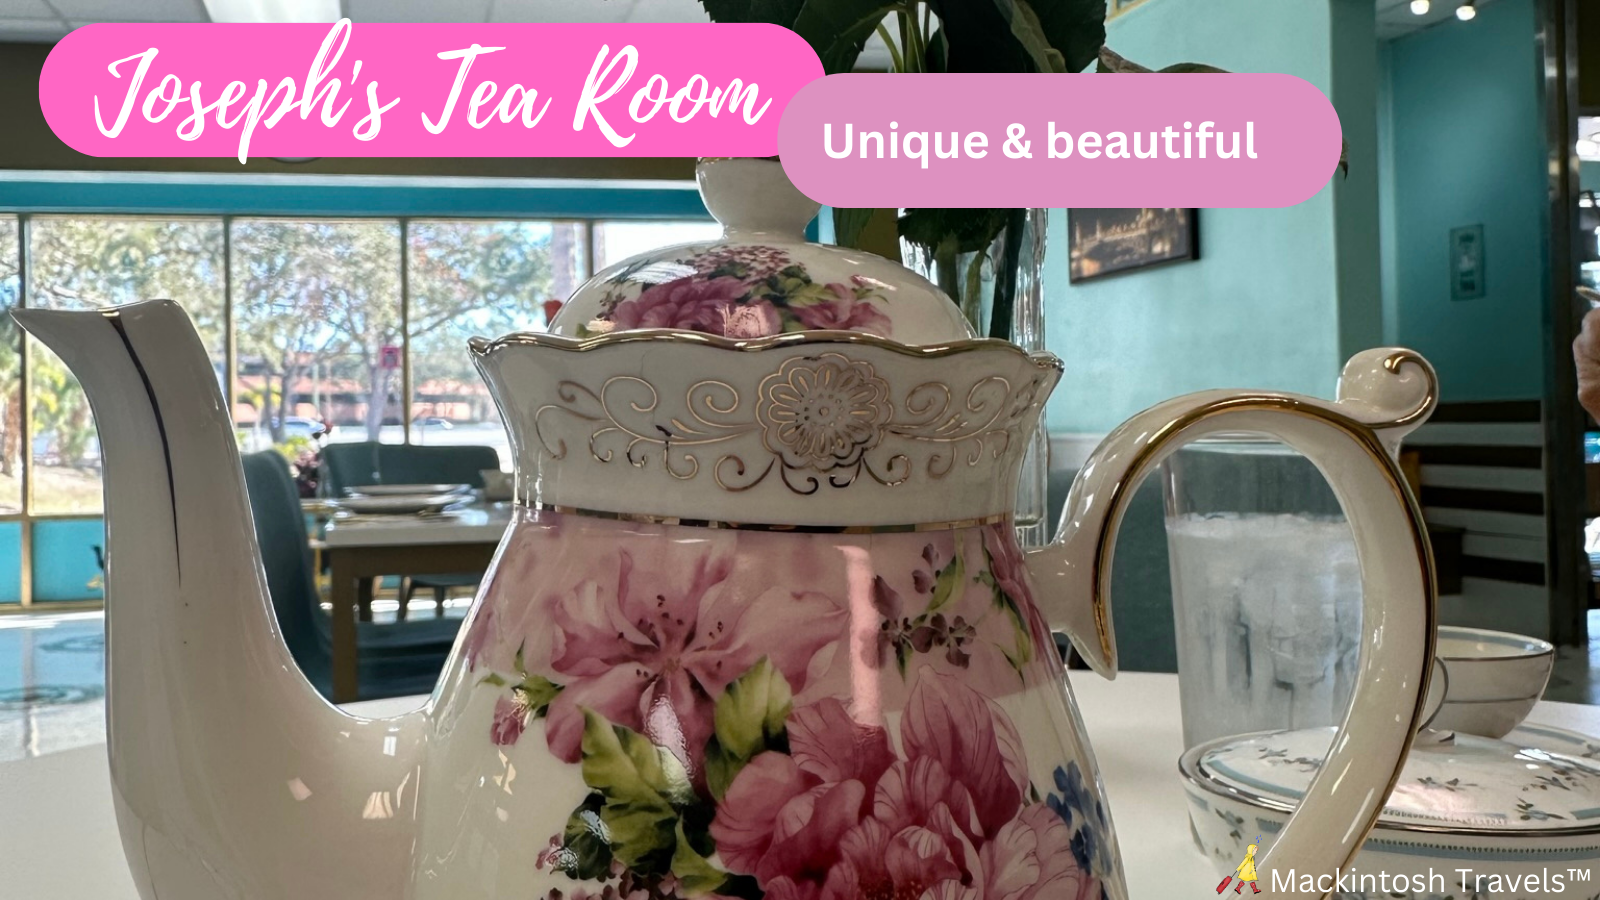 Joseph’s Tea Room: Unique & Beautiful